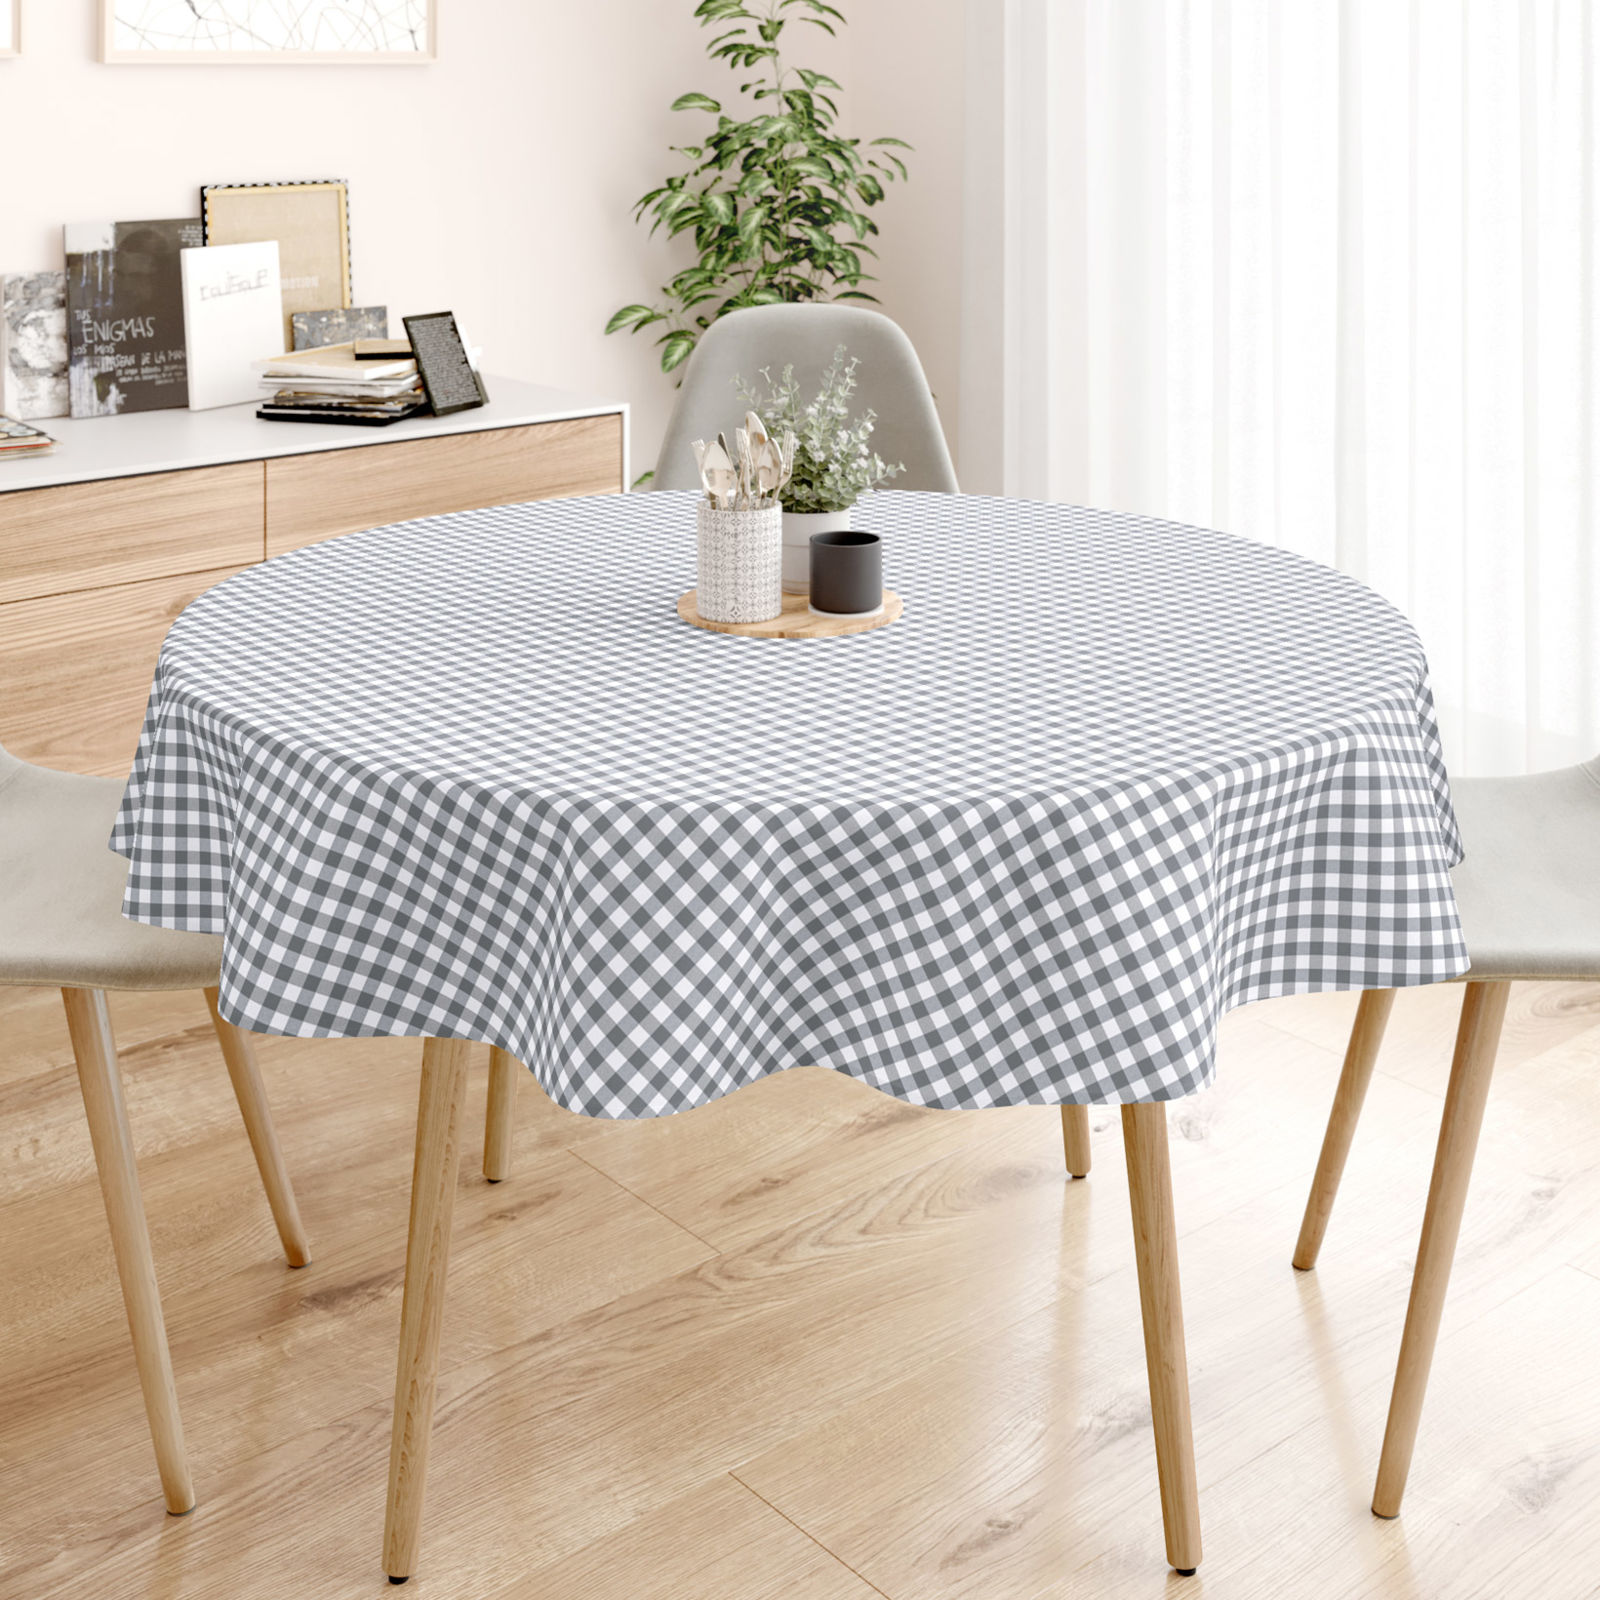 MENORCA dekoratív asztalterítő - szürke - fehér kockás - kör alakú